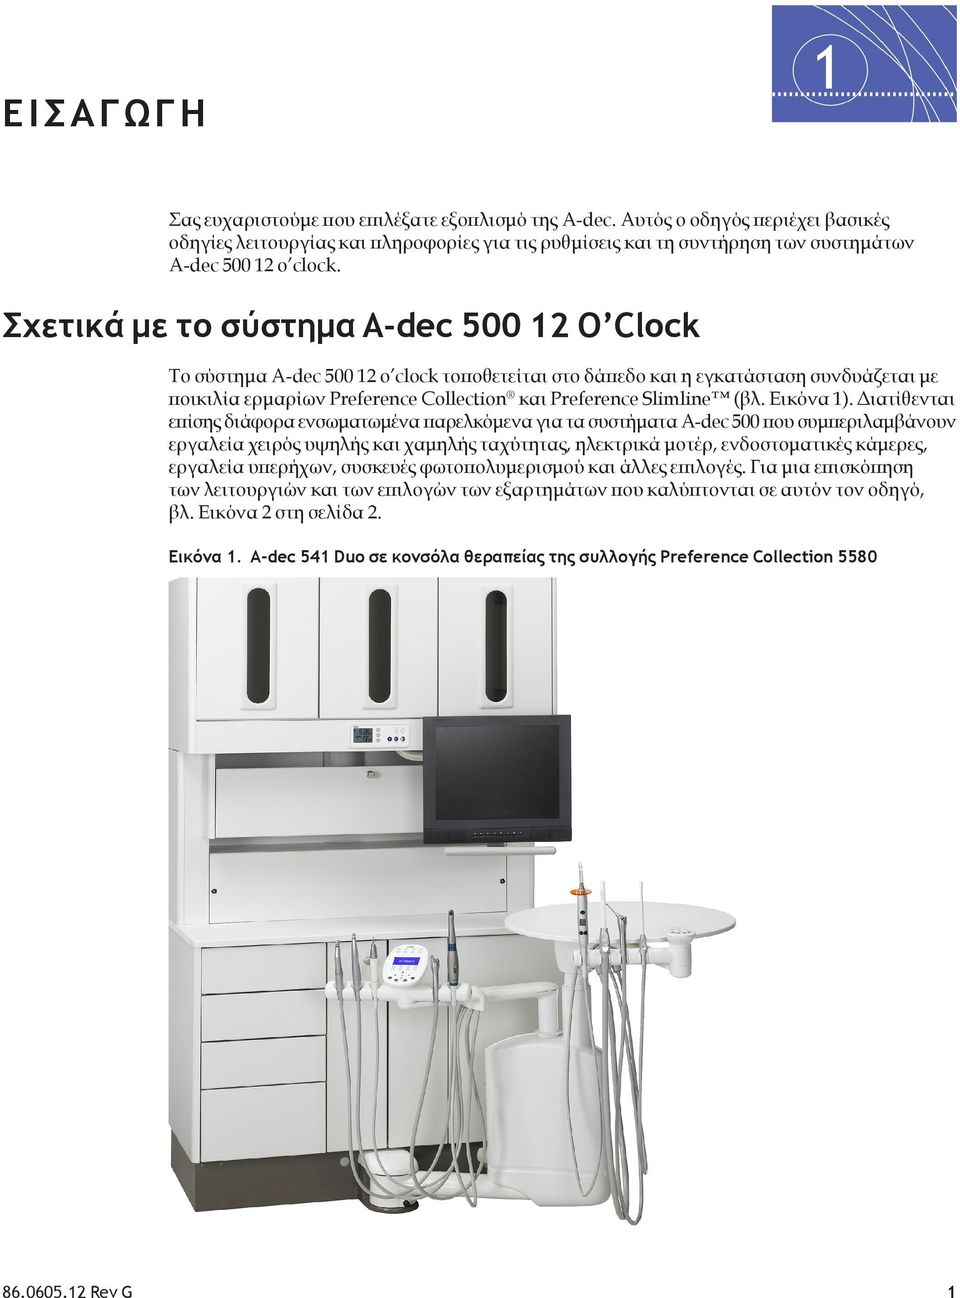 Σχετικά με το σύστημα A-dec 500 12 O Clock Το σύστημα A-dec 500 12 o clock τοποθετείται στο δάπεδο και η εγκατάσταση συνδυάζεται με ποικιλία ερμαρίων Preference Collection και Preference Slimline (βλ.